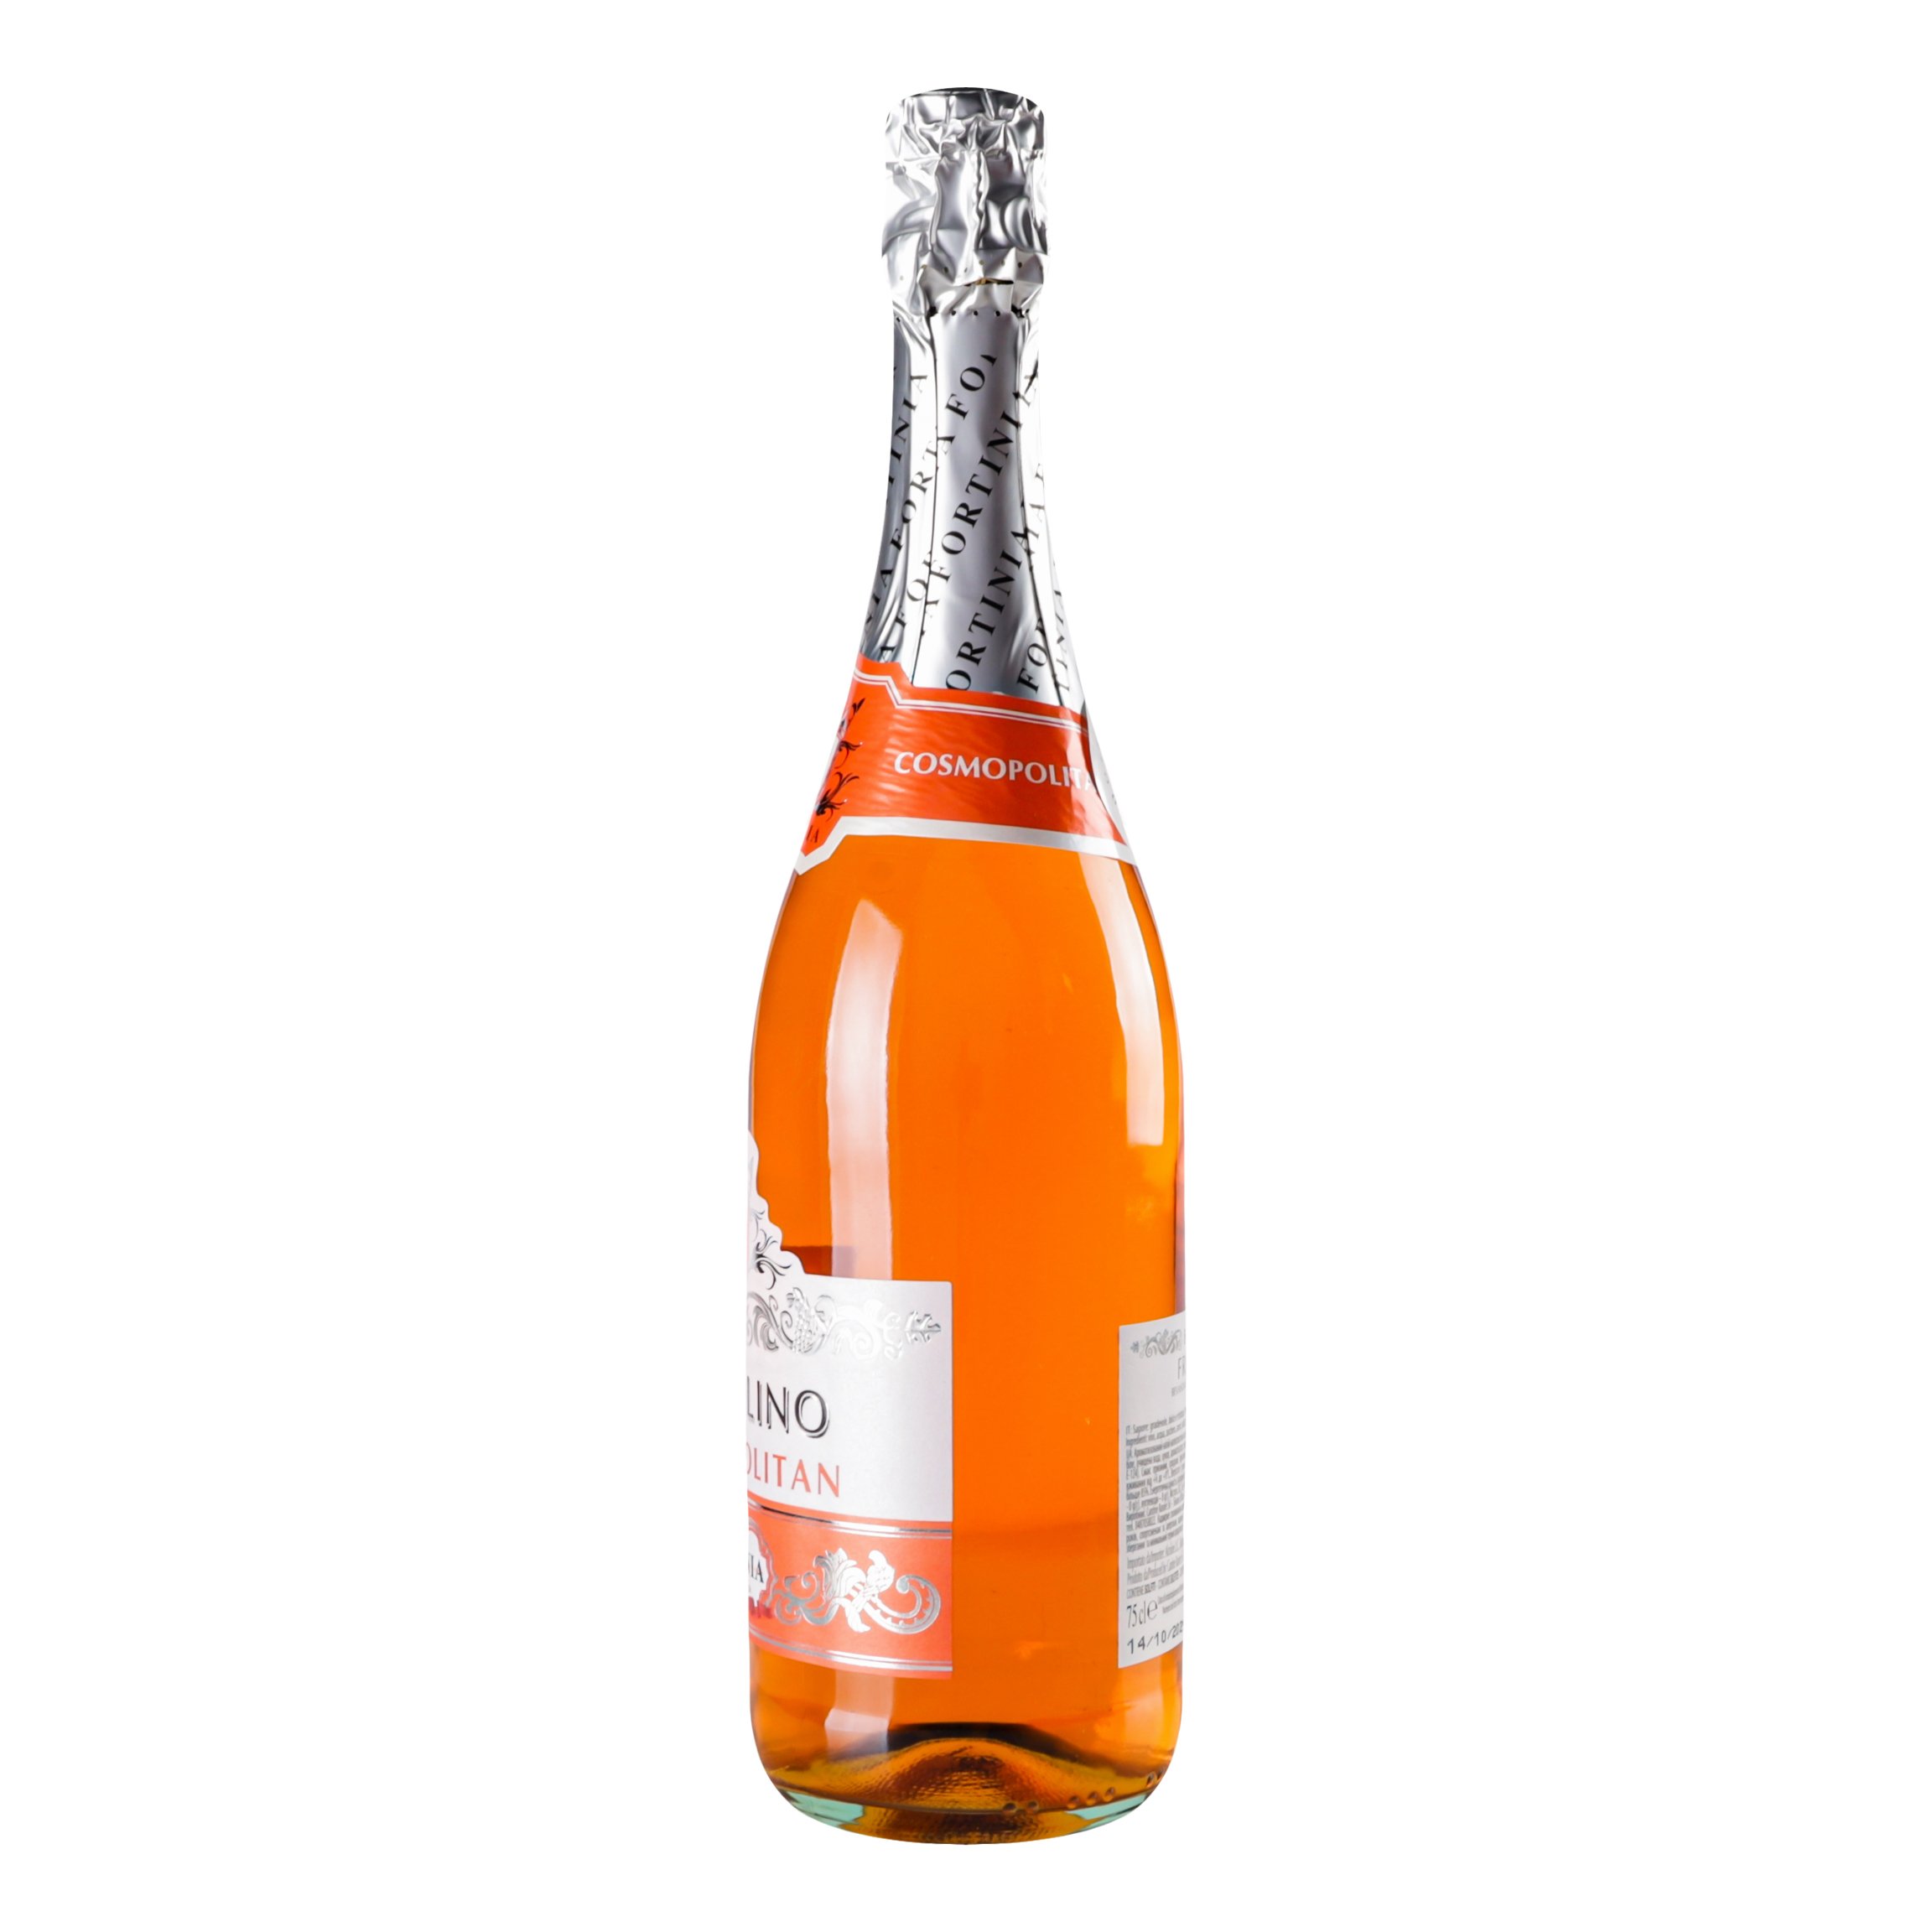 Напиток винный Фраголино Fortinia Cosmopolitan оранжевый полусладкое, 7%, 0,75 л (830273) - фото 2